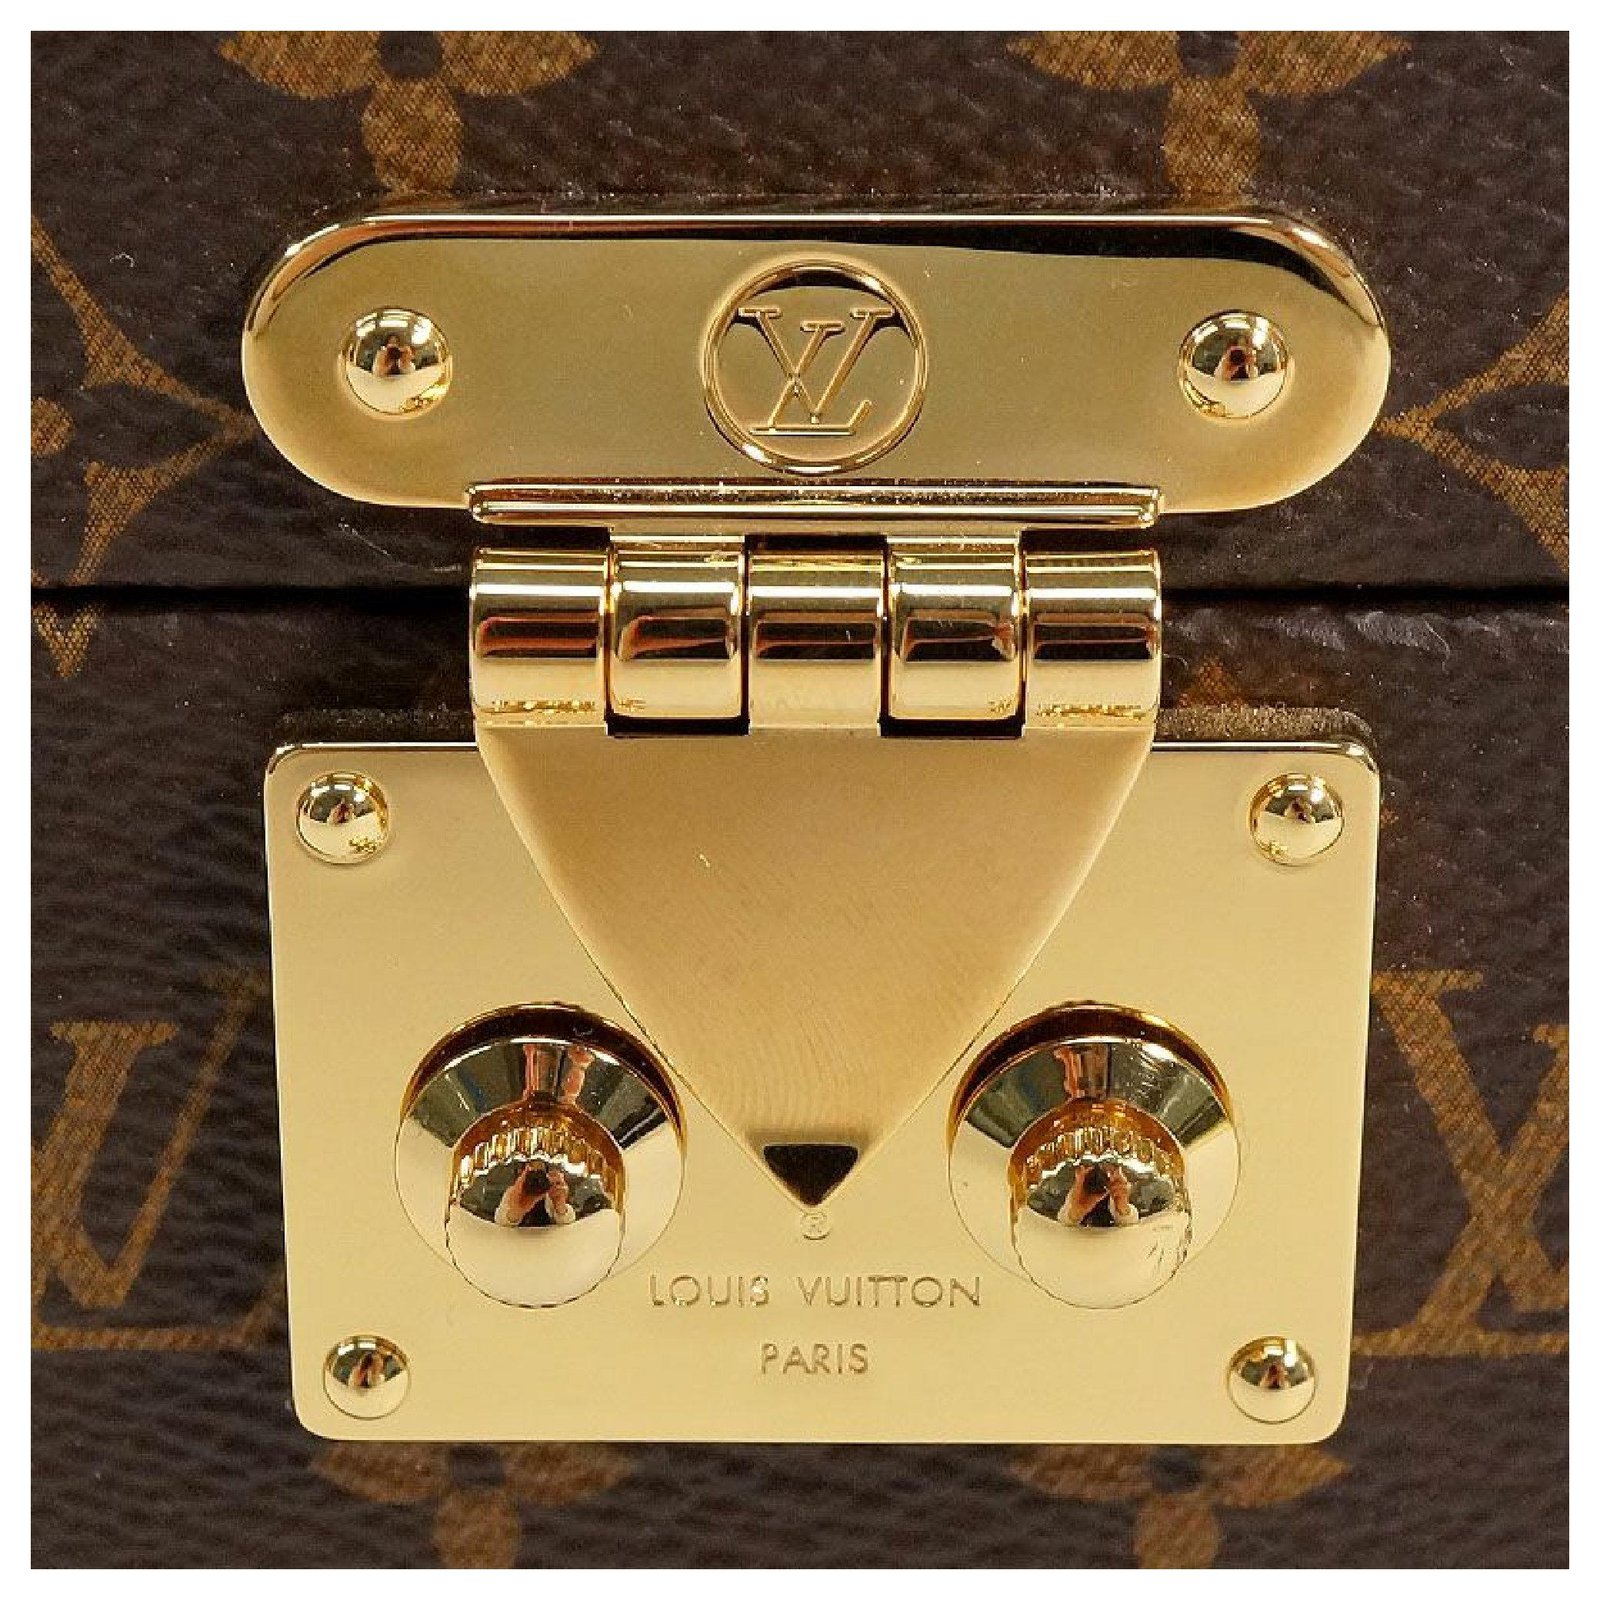 Louis Vuitton MONOGRAM Vivienne music box (GI0267)